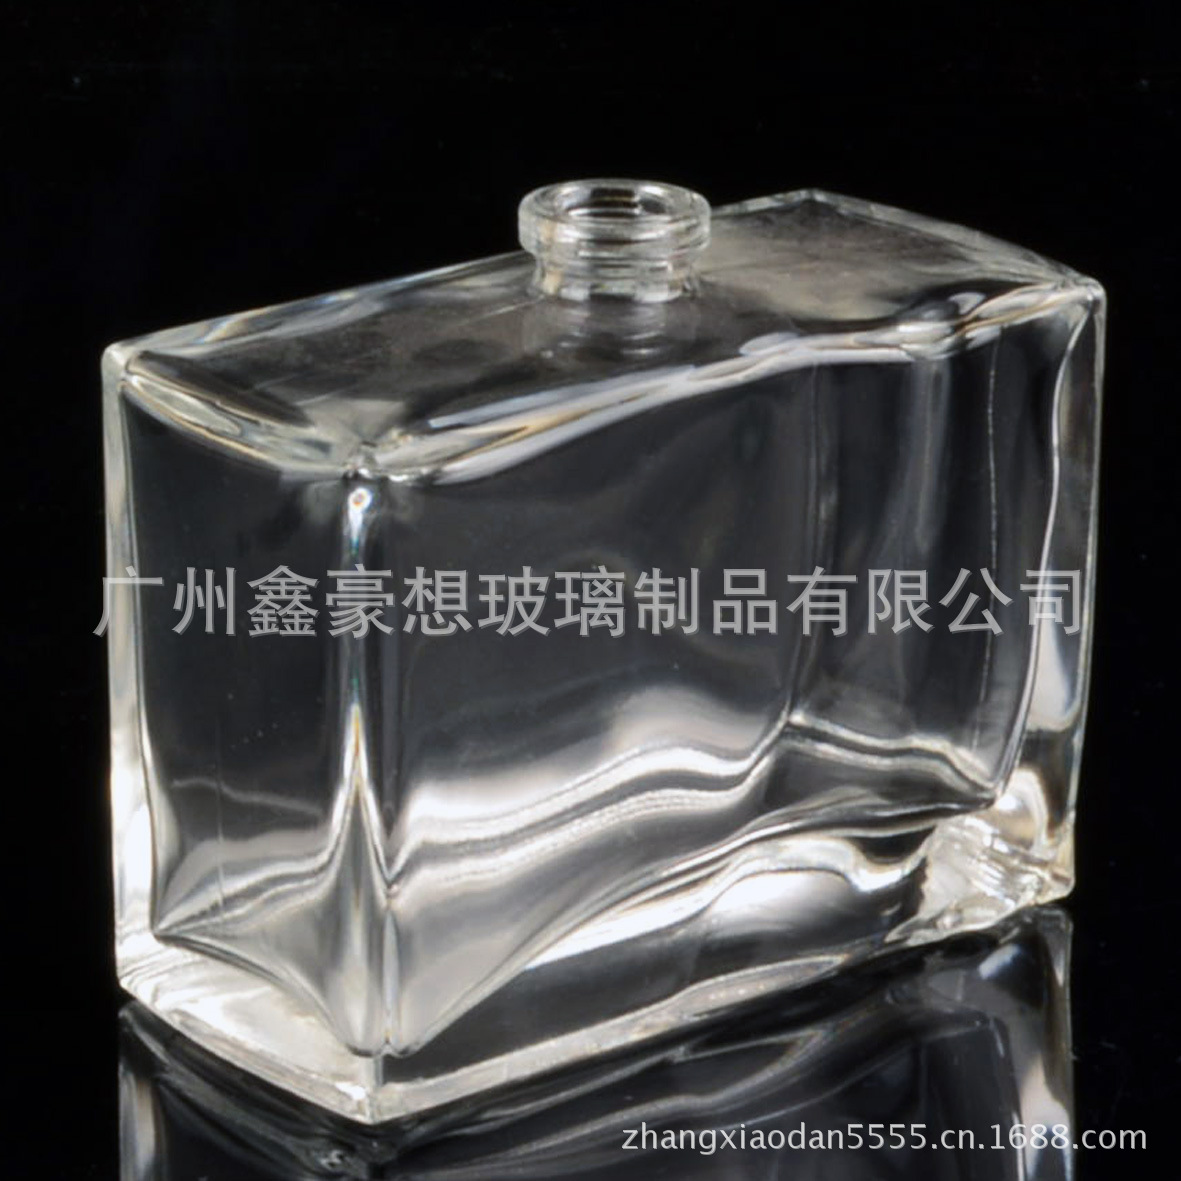 【玻璃厂直销新款方形75ml香水瓶光瓶】